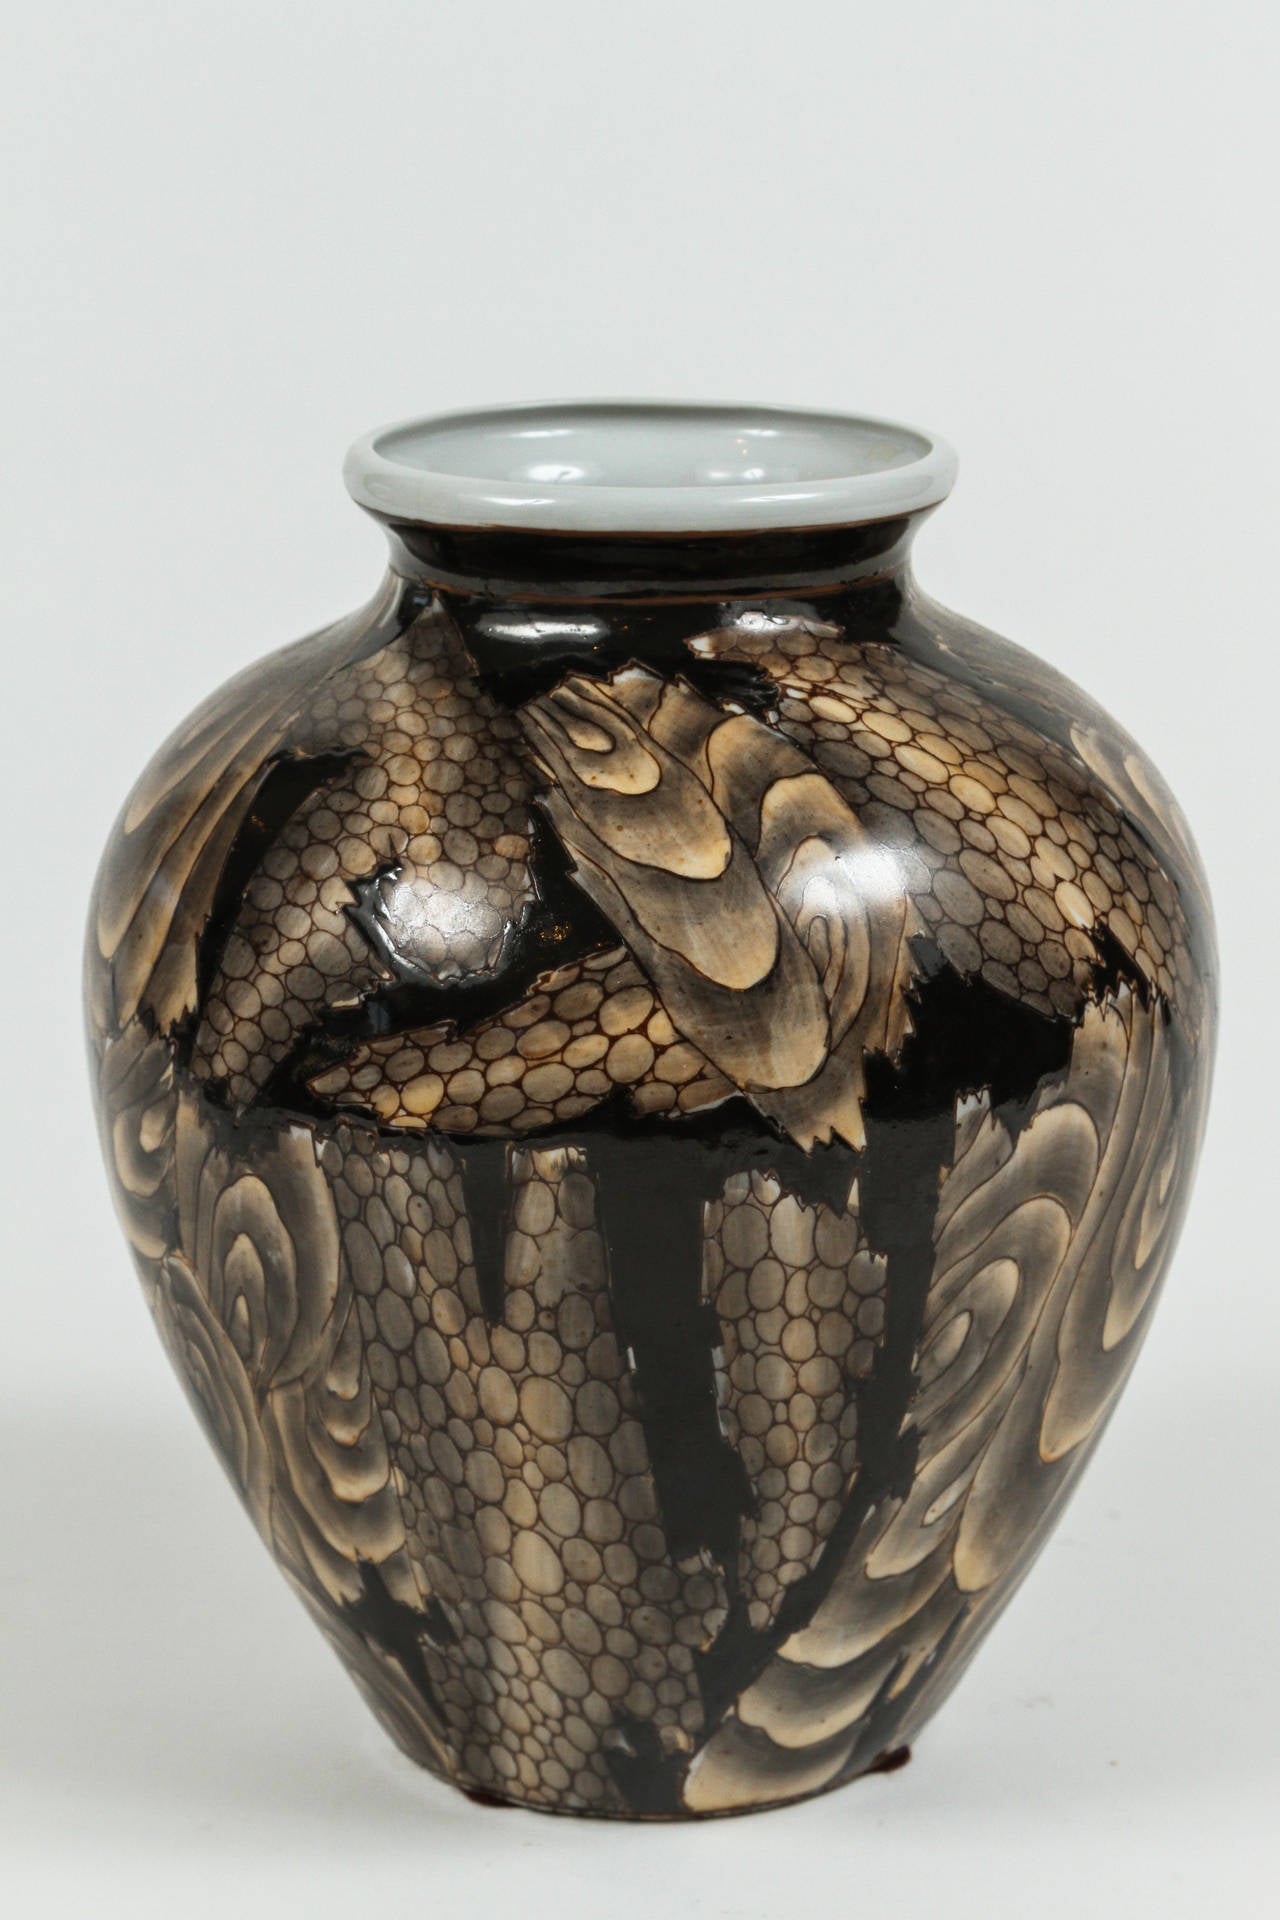 Sehr einzigartige japanische Vase mit abstraktem Muster in verschiedenen Brauntönen. Die tiefbraune Glasur ist erhaben und verleiht der Vase eine wunderbare taktile Textur.